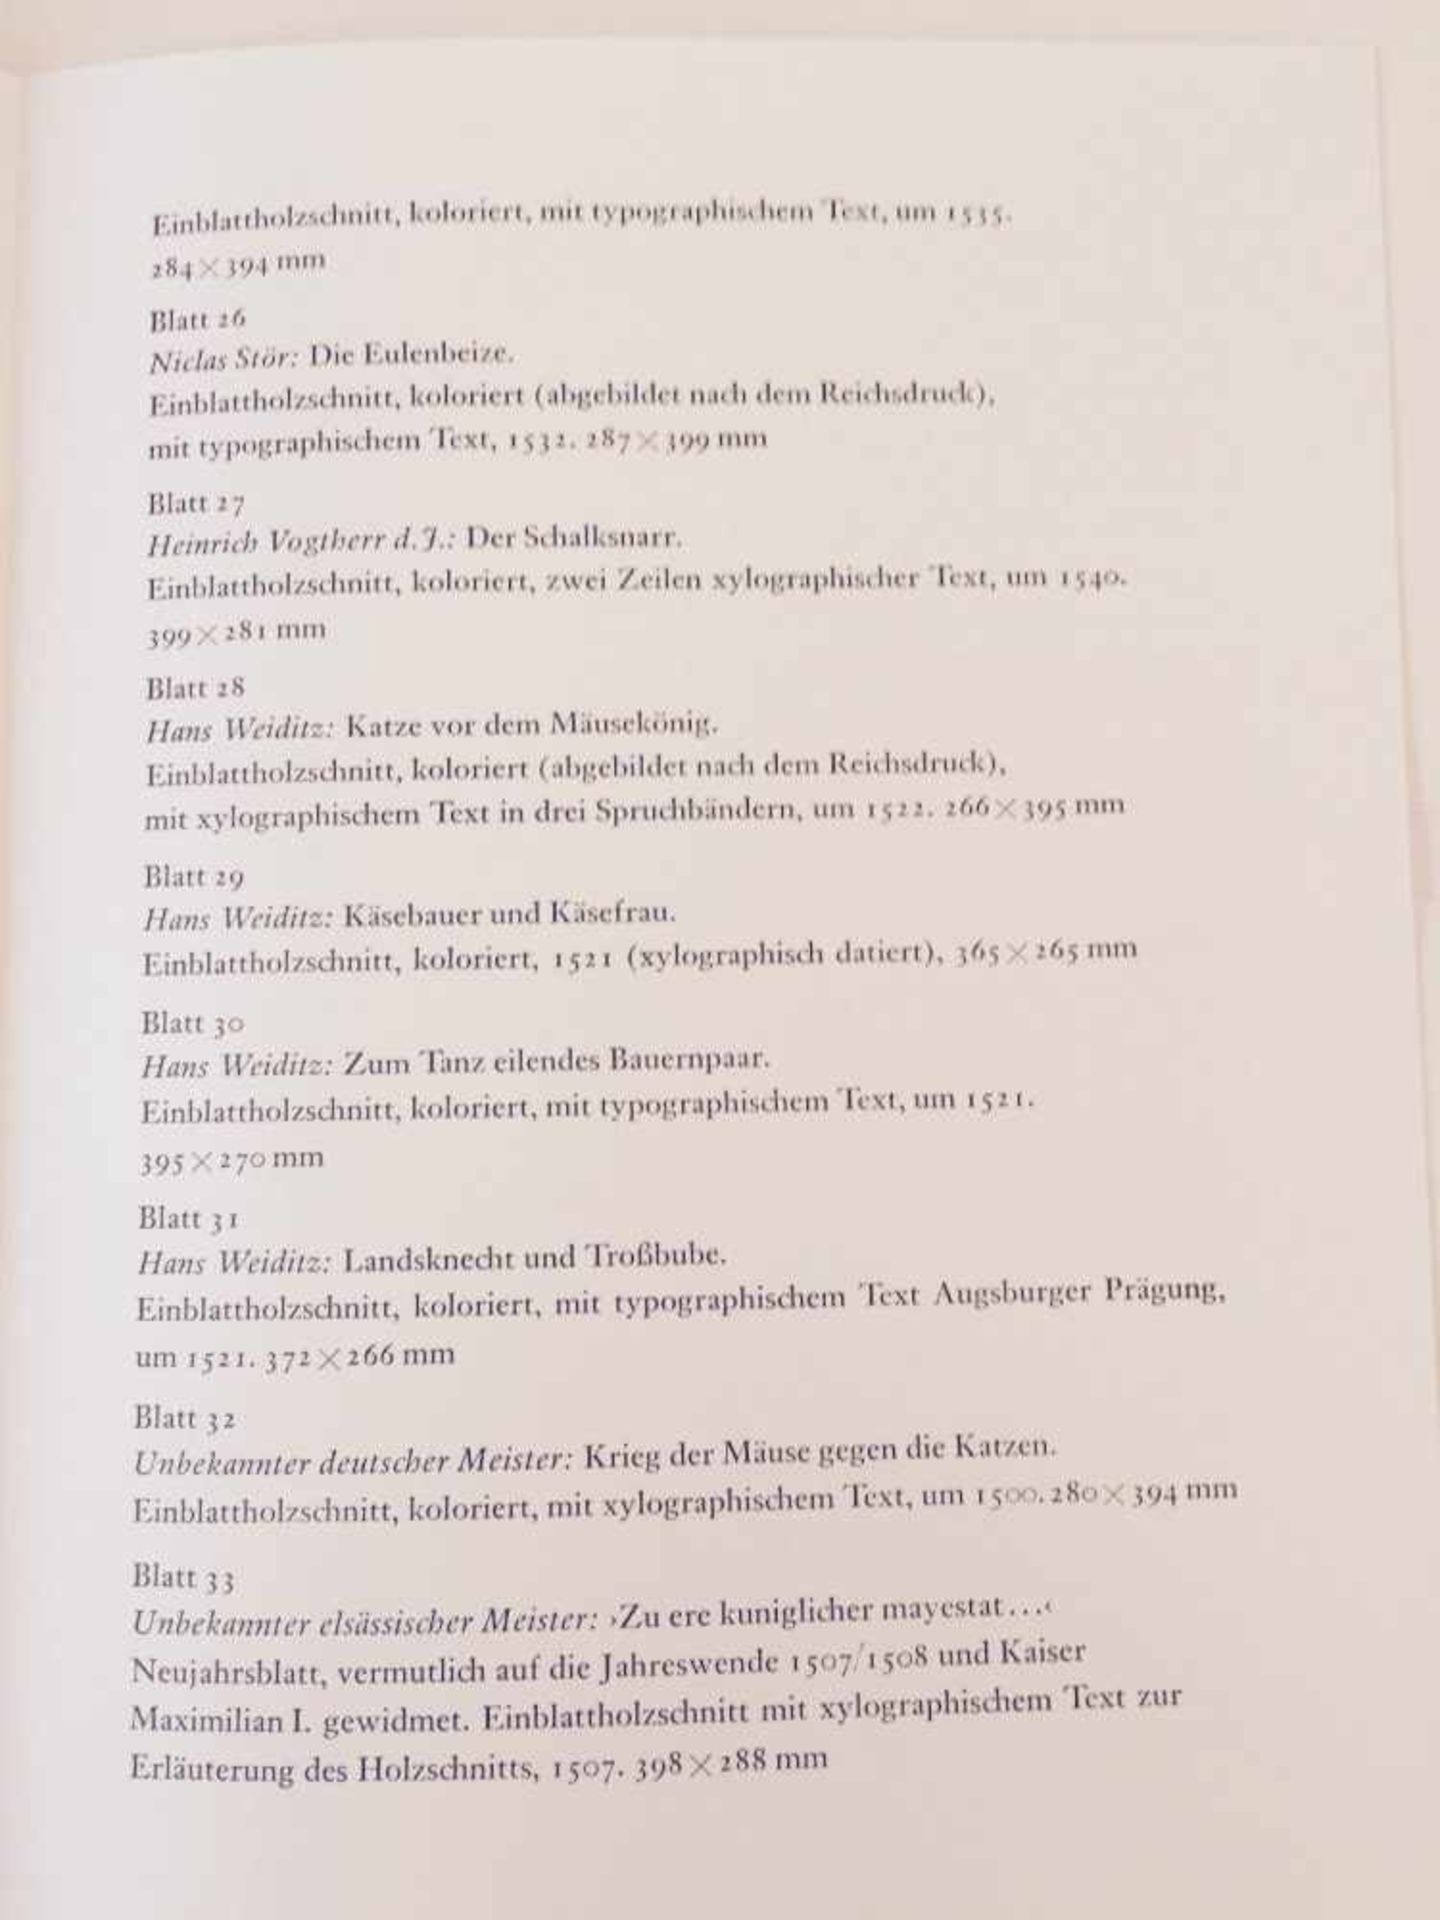 "FLUGBLÄTTER DER REFORMATION UND DES BAUERNKRIEGES", 50 teils kolorierte Blätter in Mappe,DDR 1975 - Bild 8 aus 8